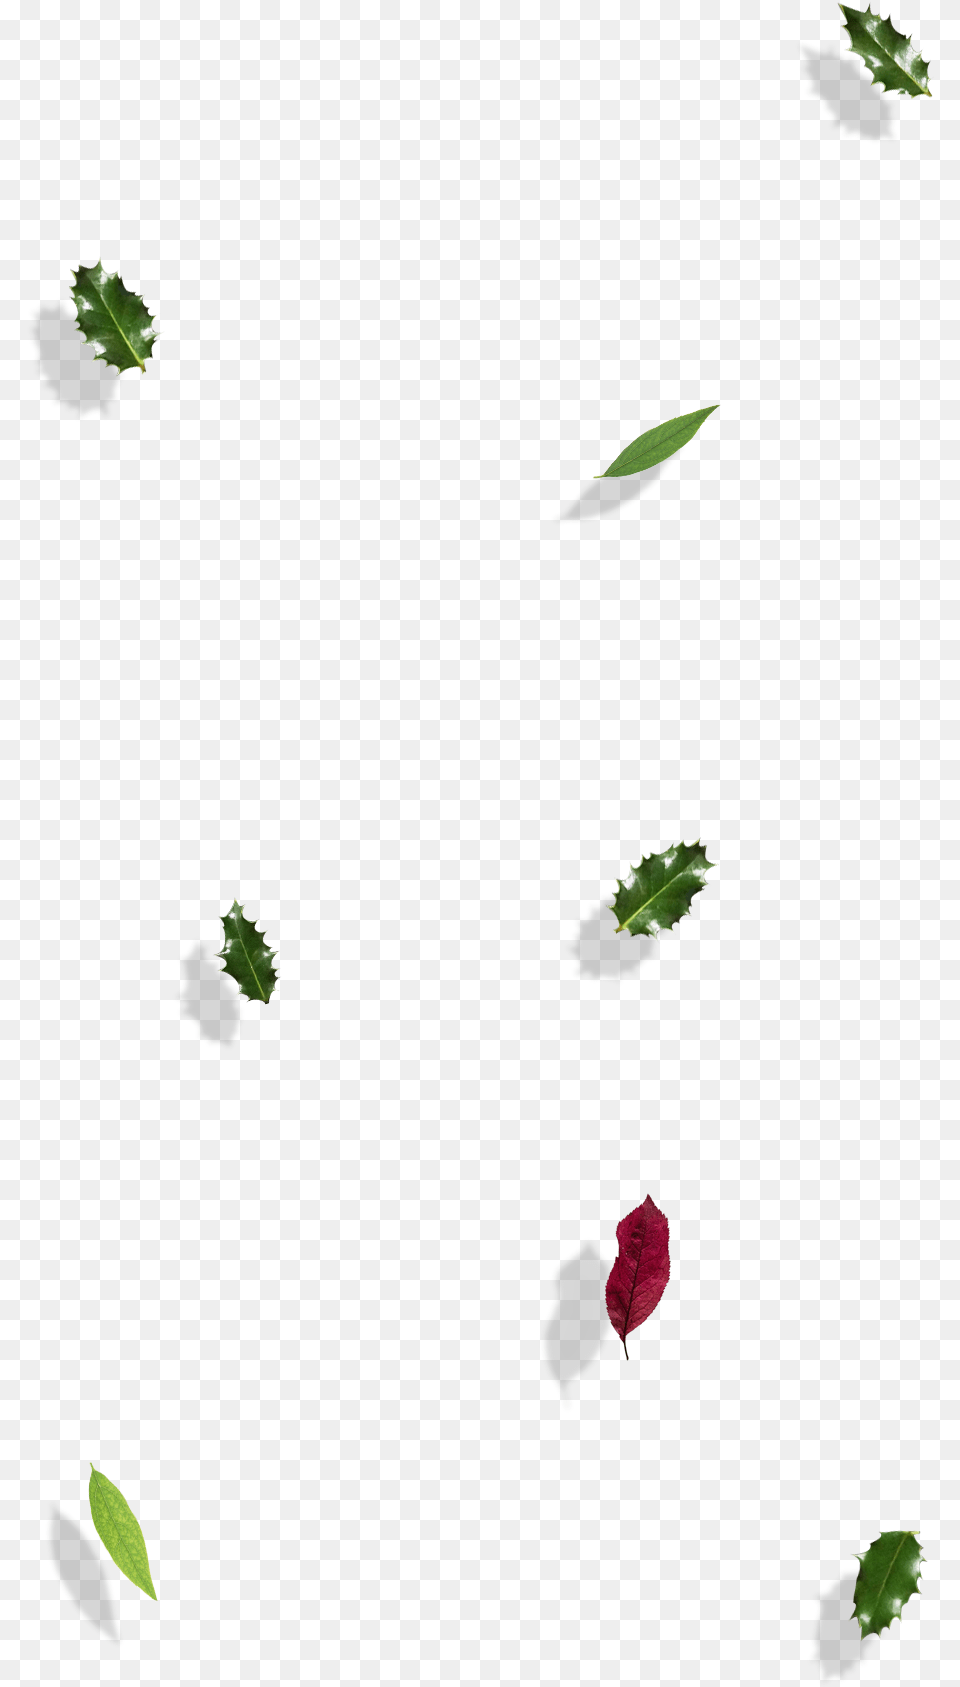 Illustration, Bud, Flower, Leaf, Petal Png Image